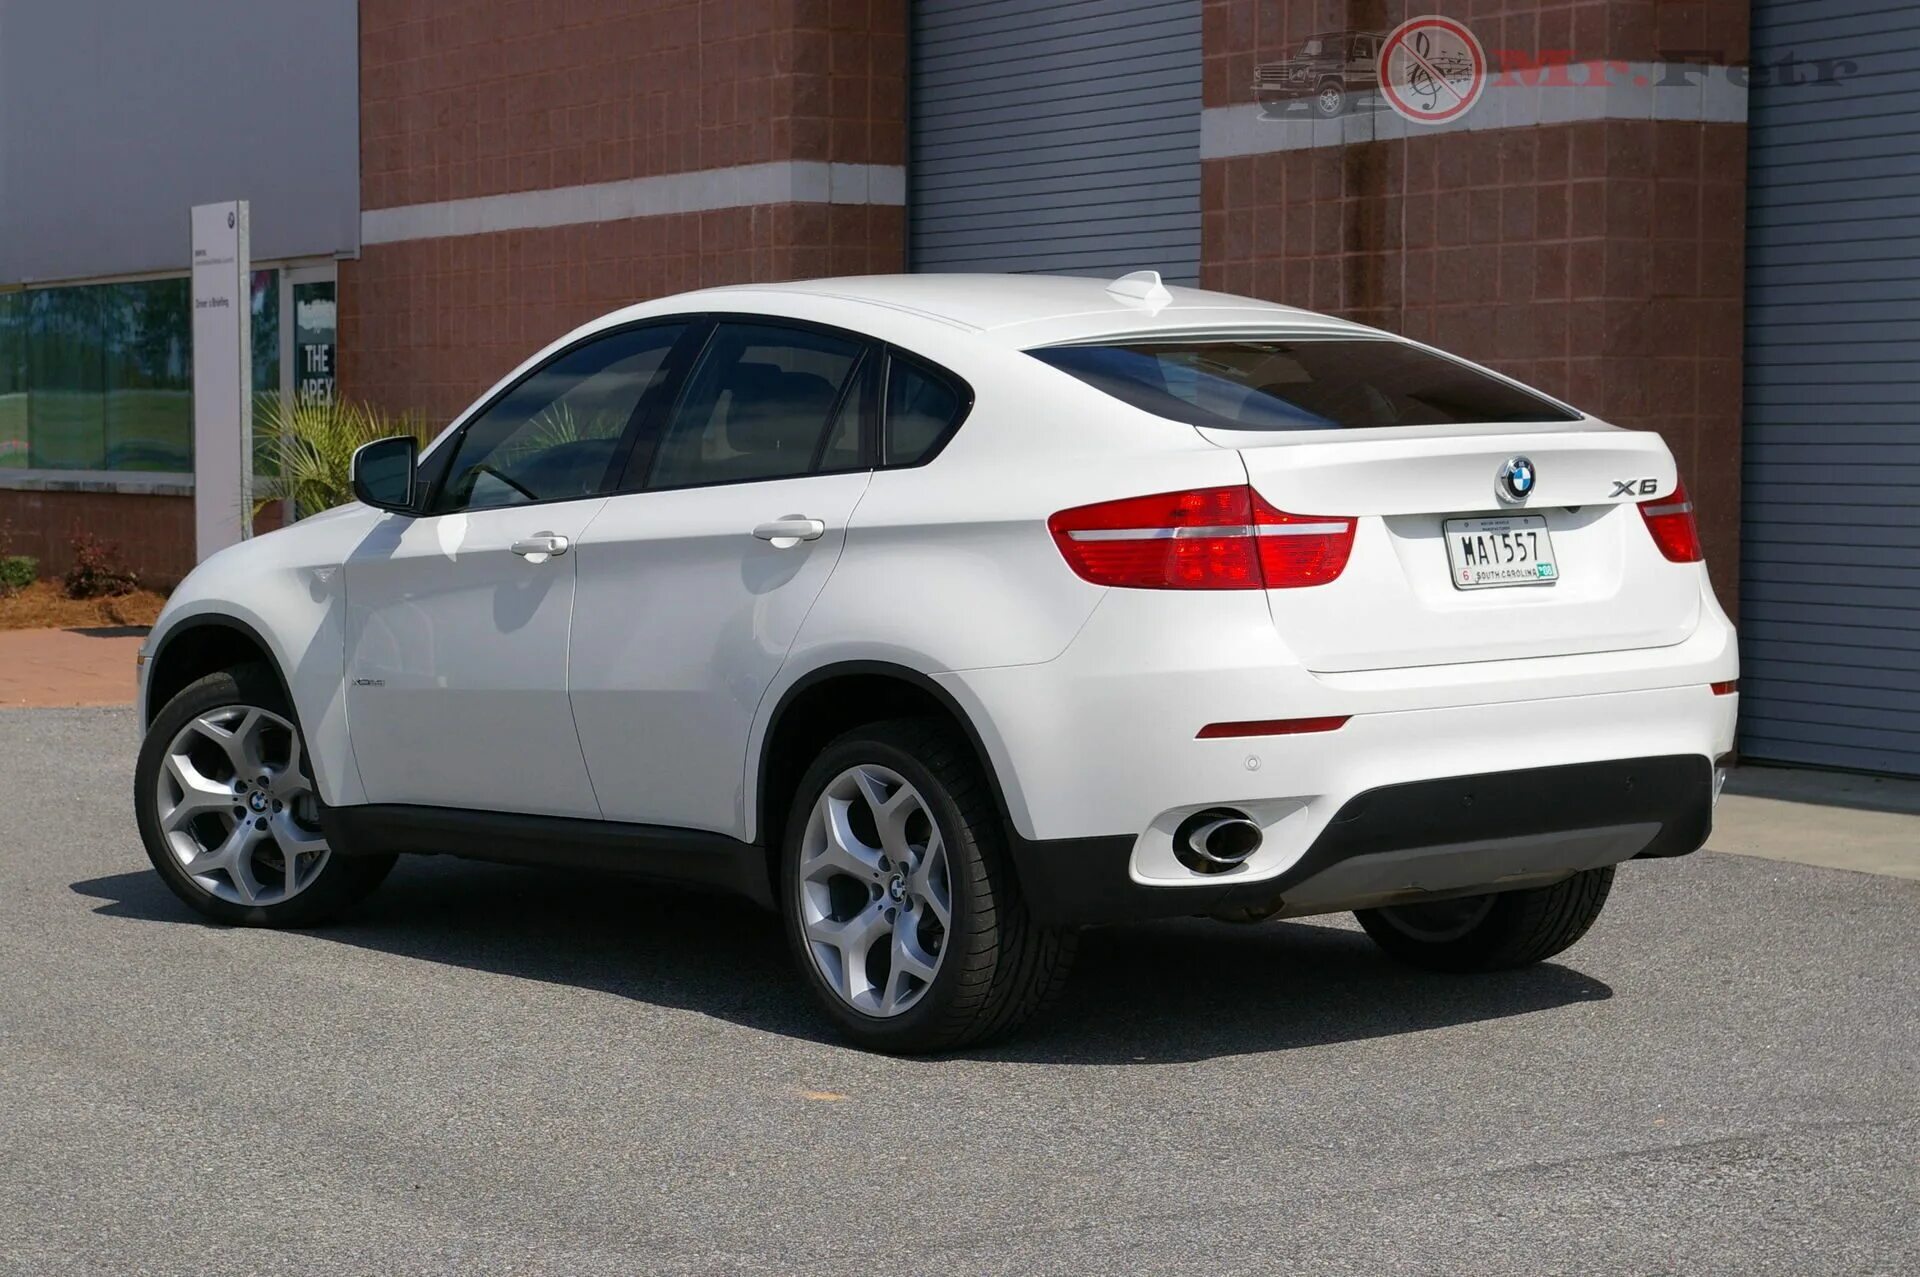 Продажа x6. БМВ Икс 6. BMW x6 2010. BMW x6 2014. БМВ Икс 6 белая.